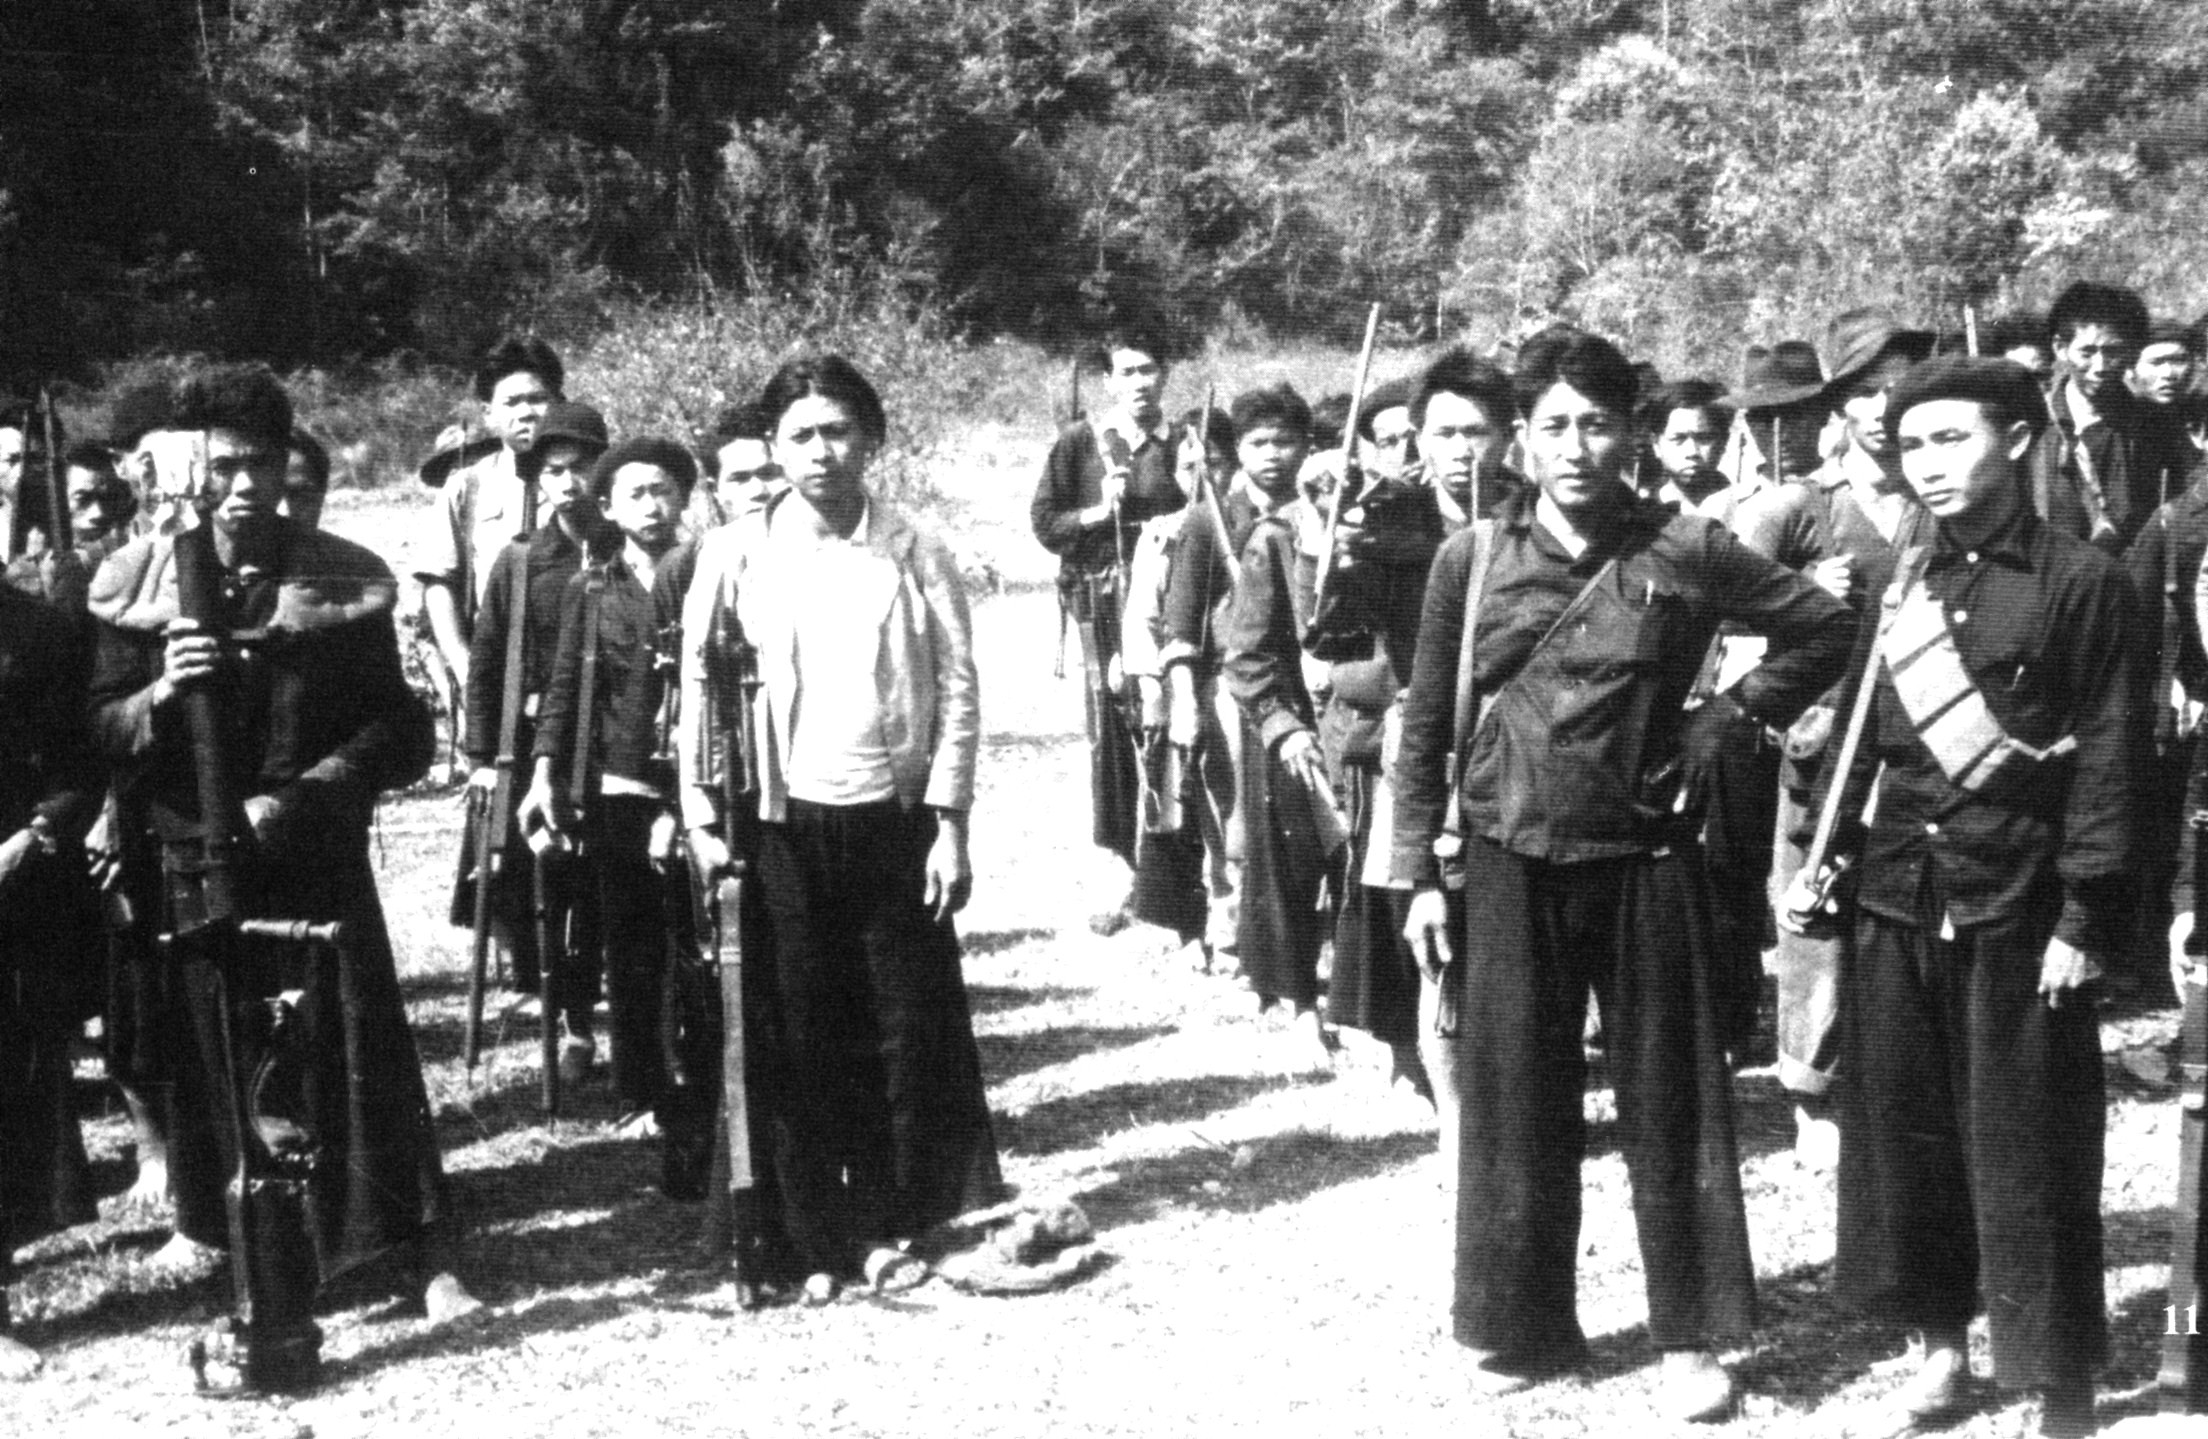 Hmong Auto Defense Choc